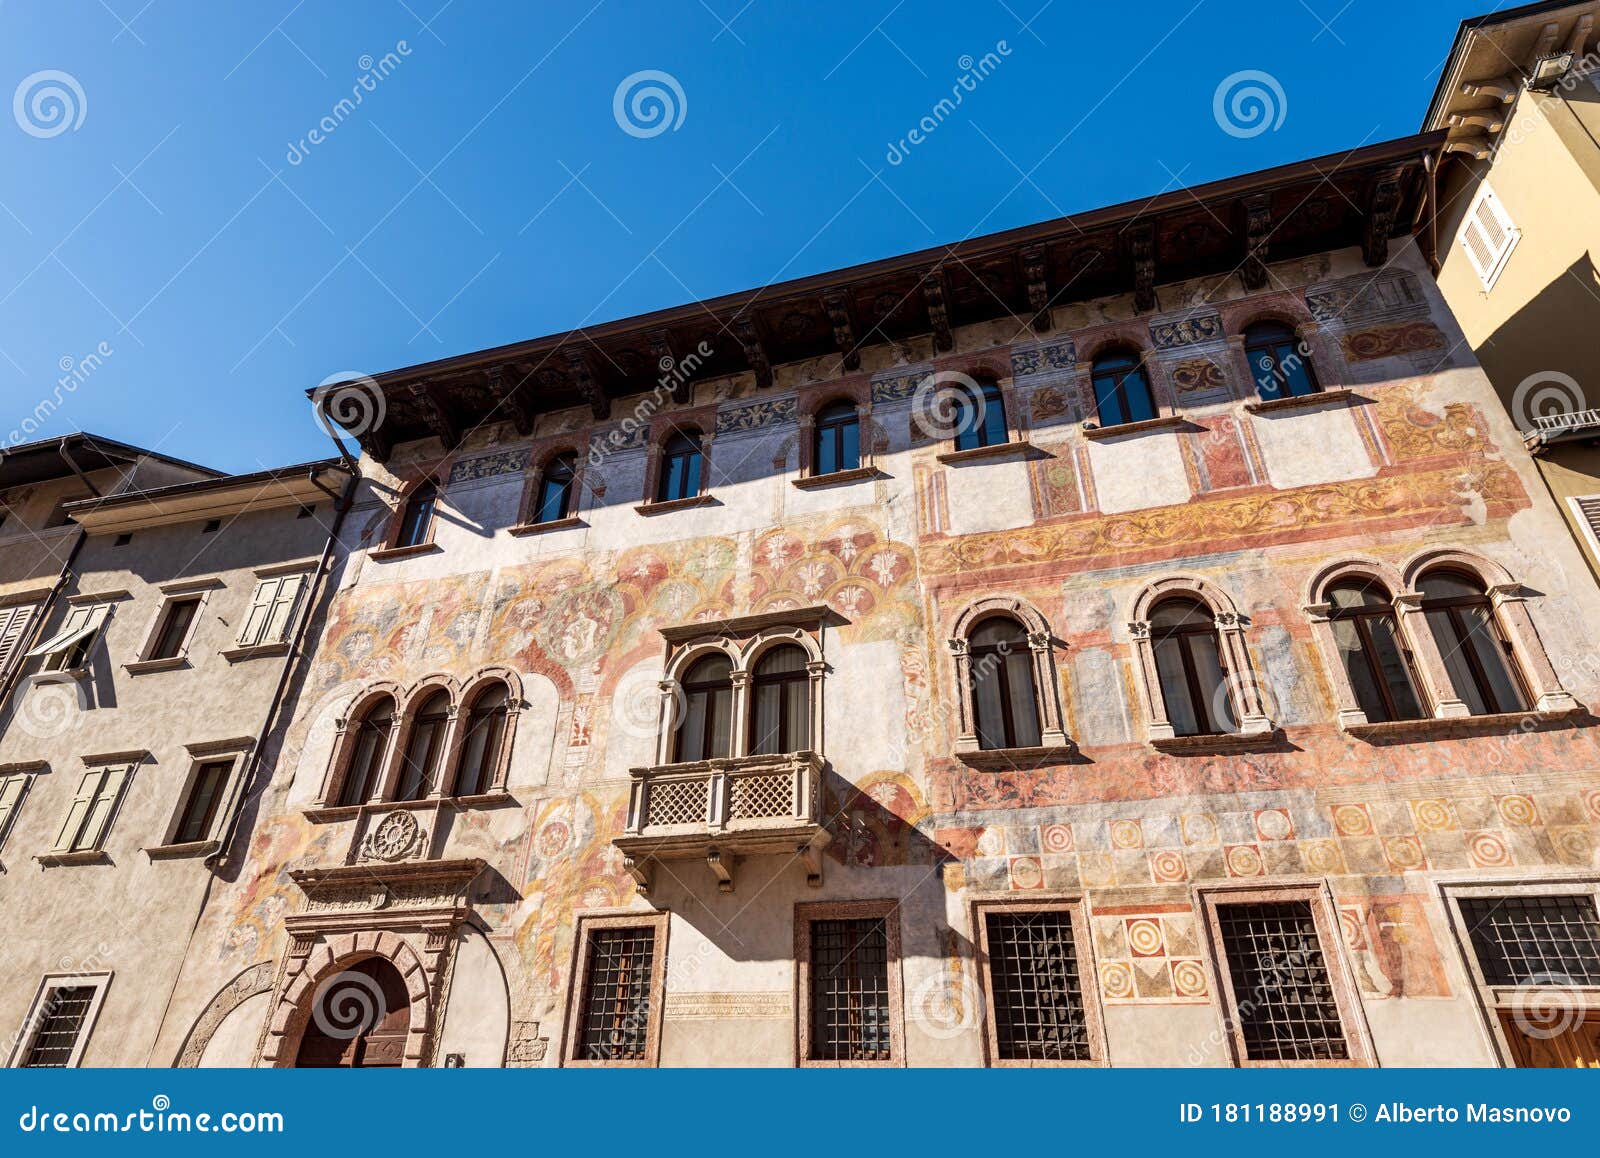 palazzo quetta alberti colico - medieval palace in trento italy